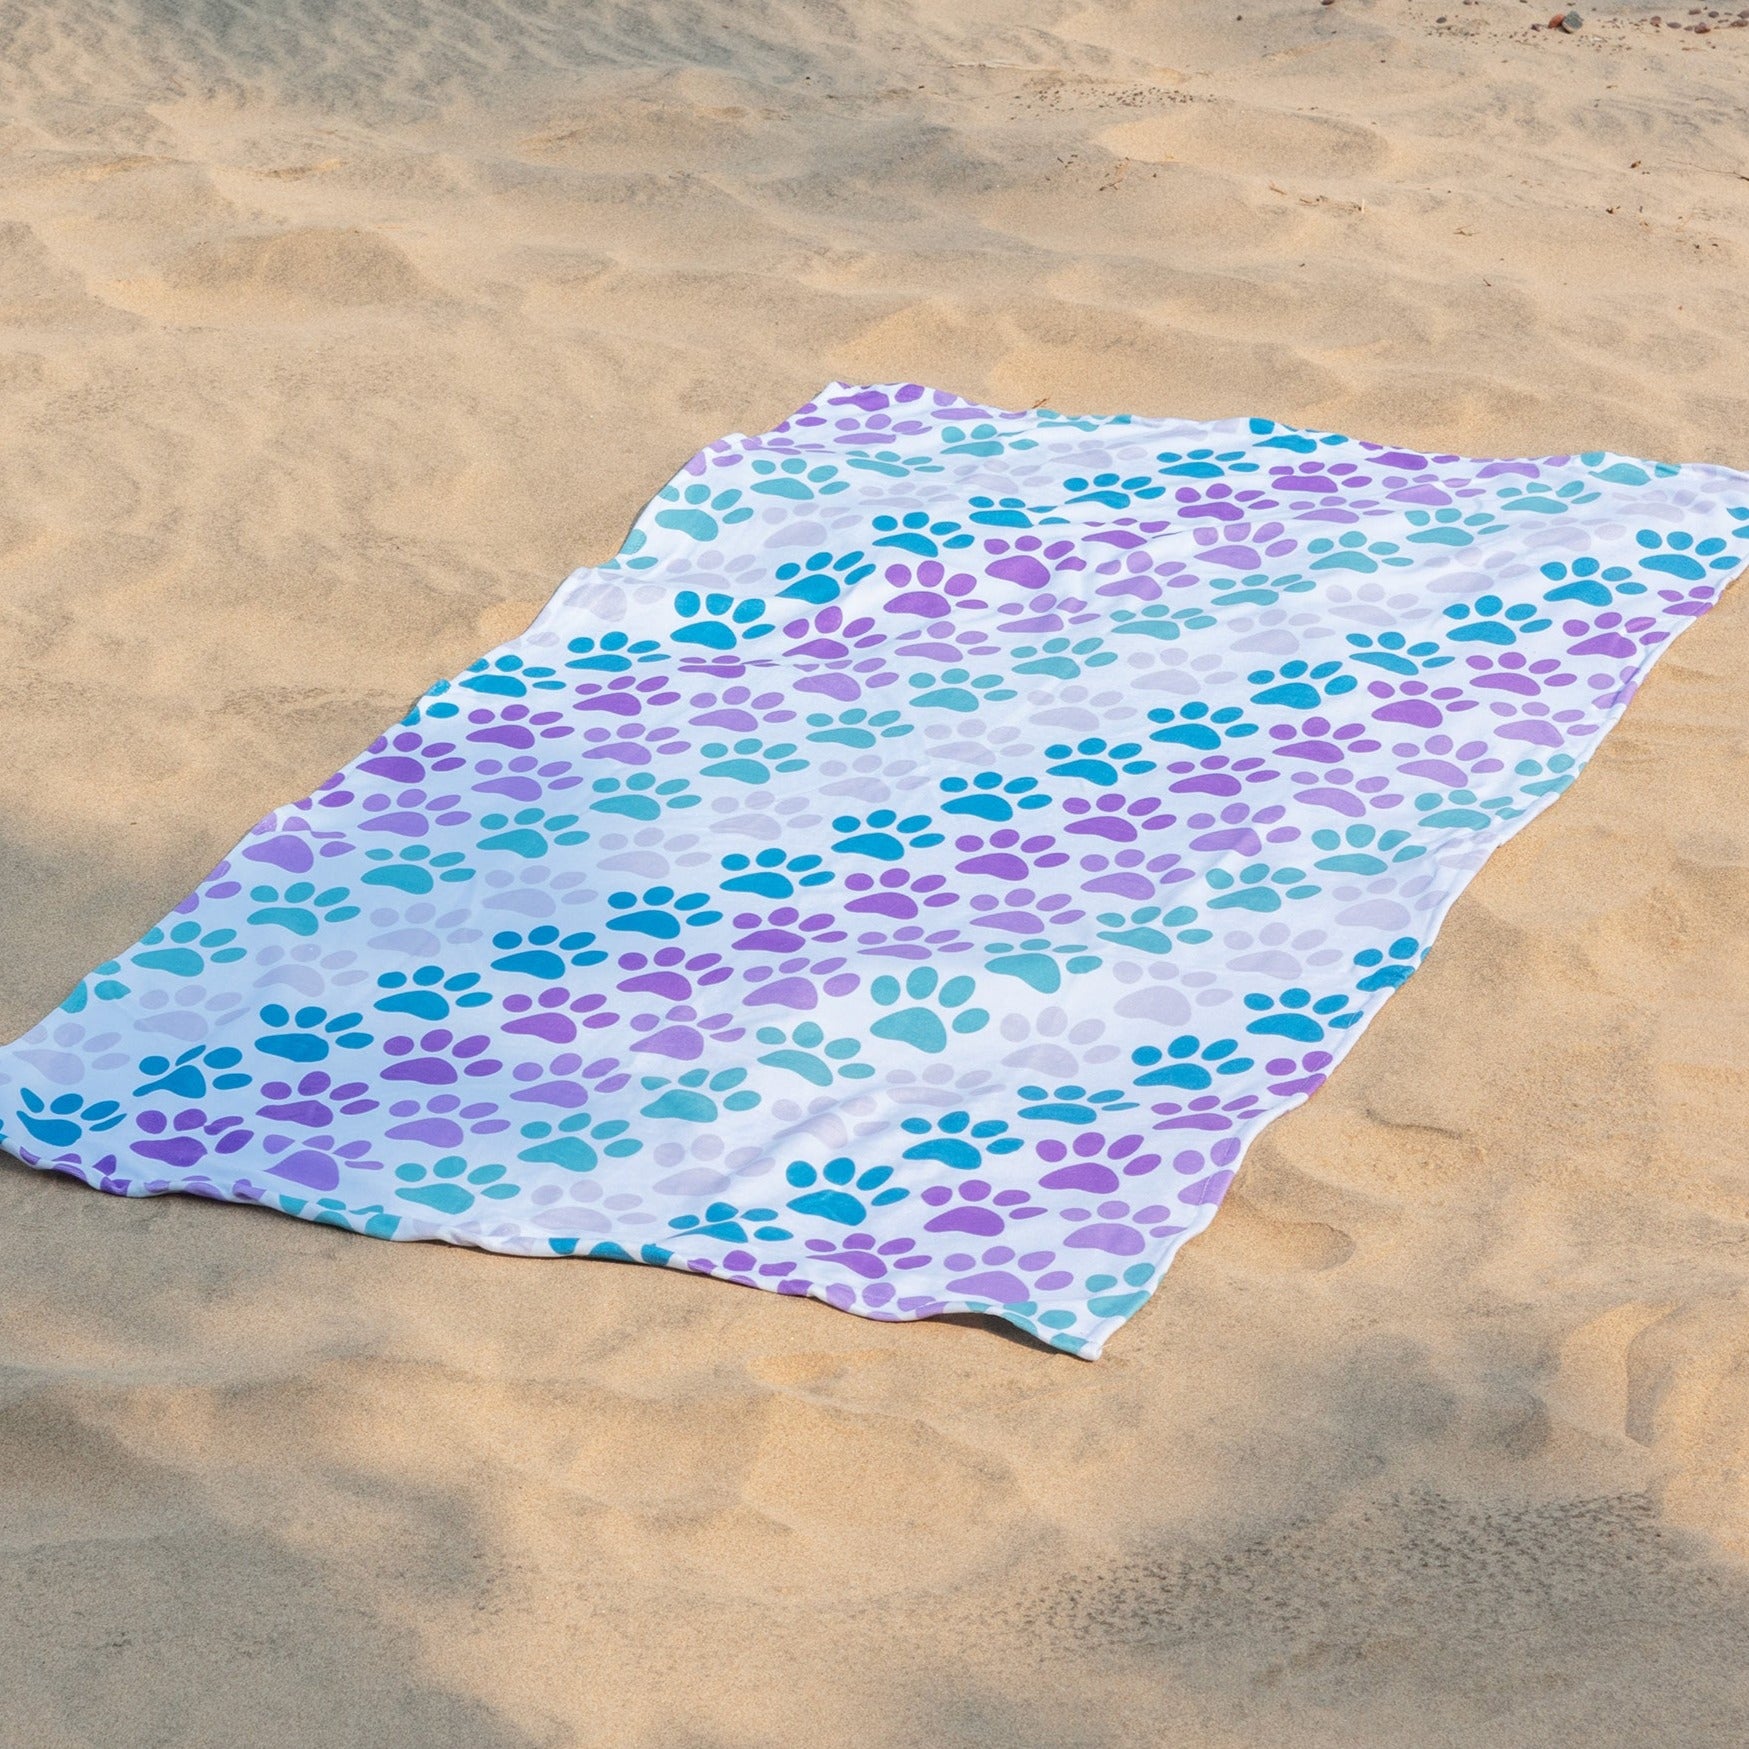 Summertime Fun Beach Towel - Diagonal Paws